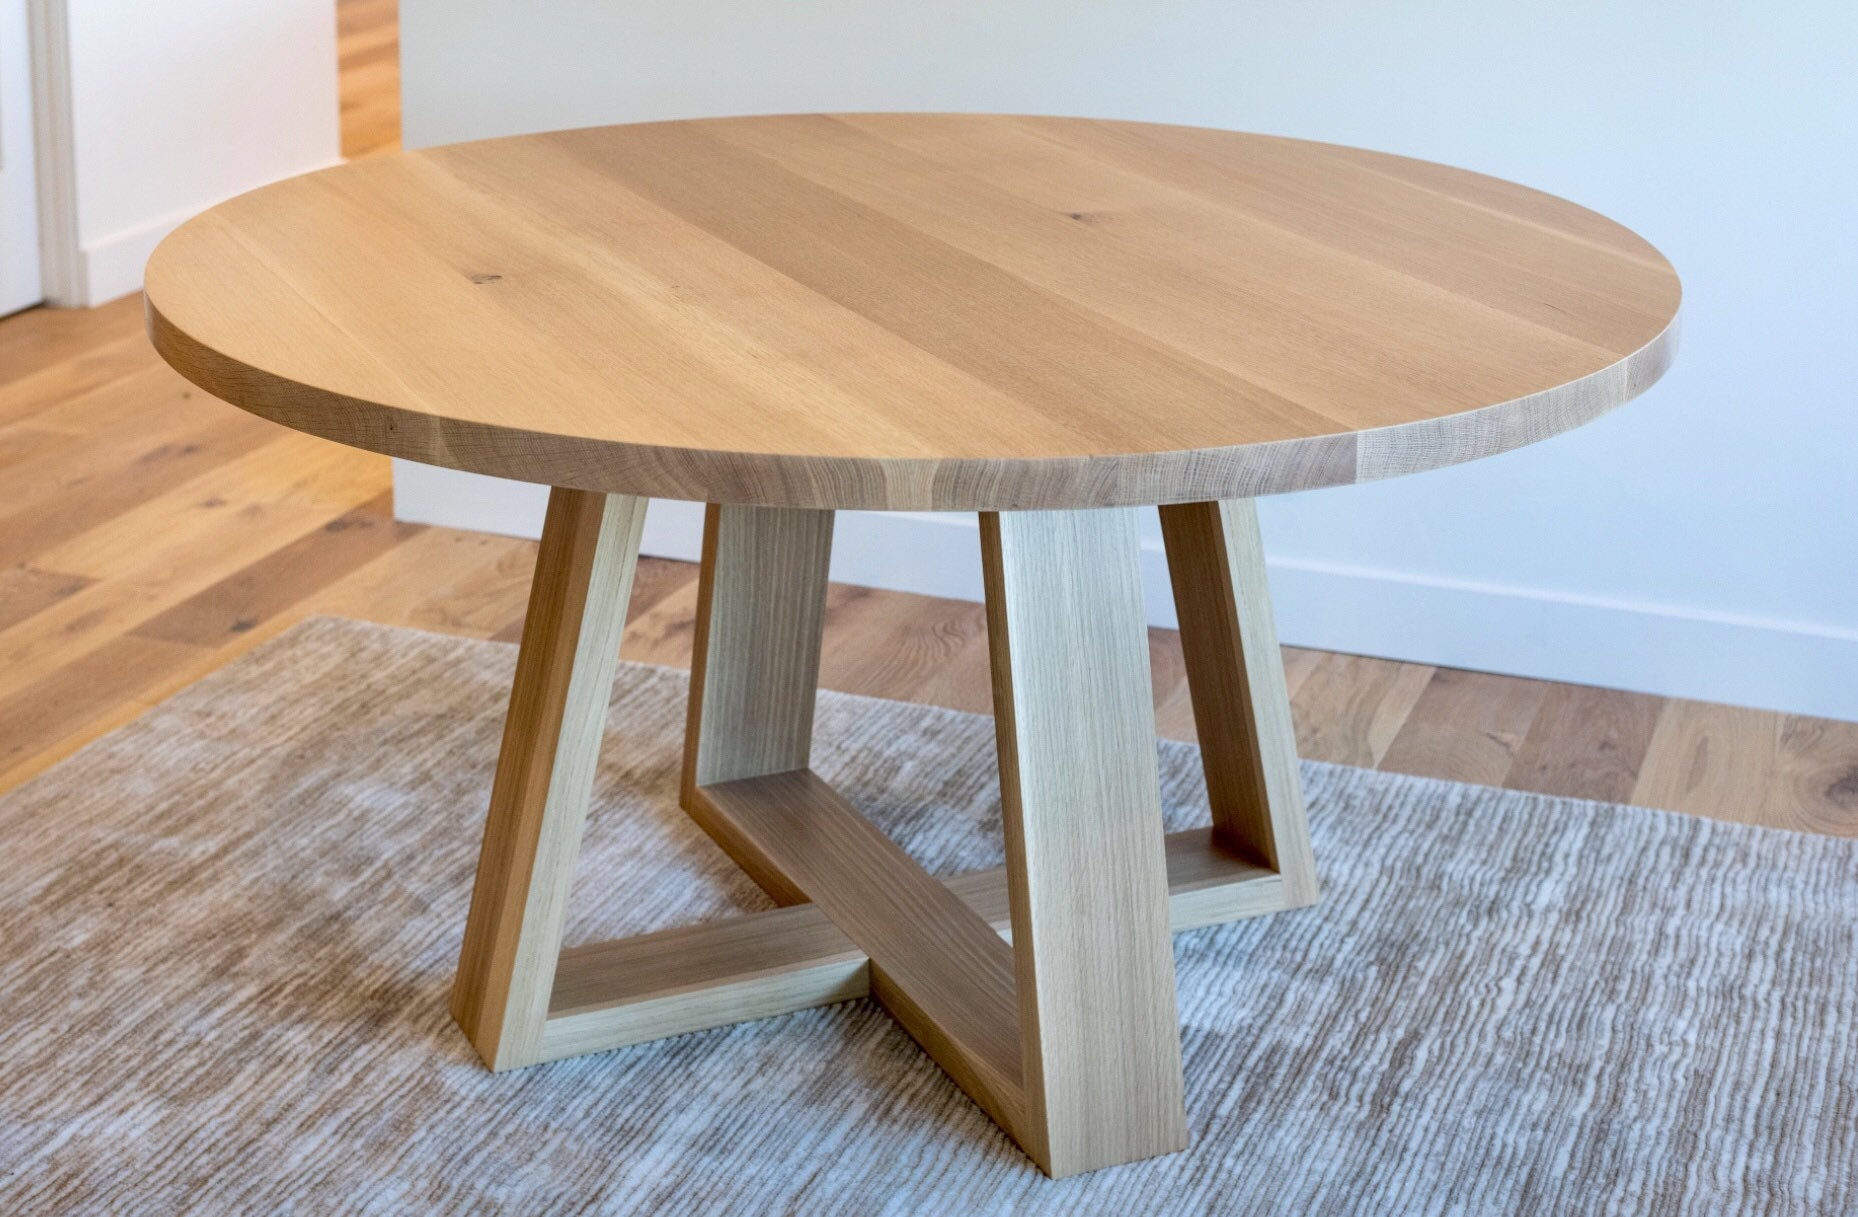 48 inch round oak kitchen table